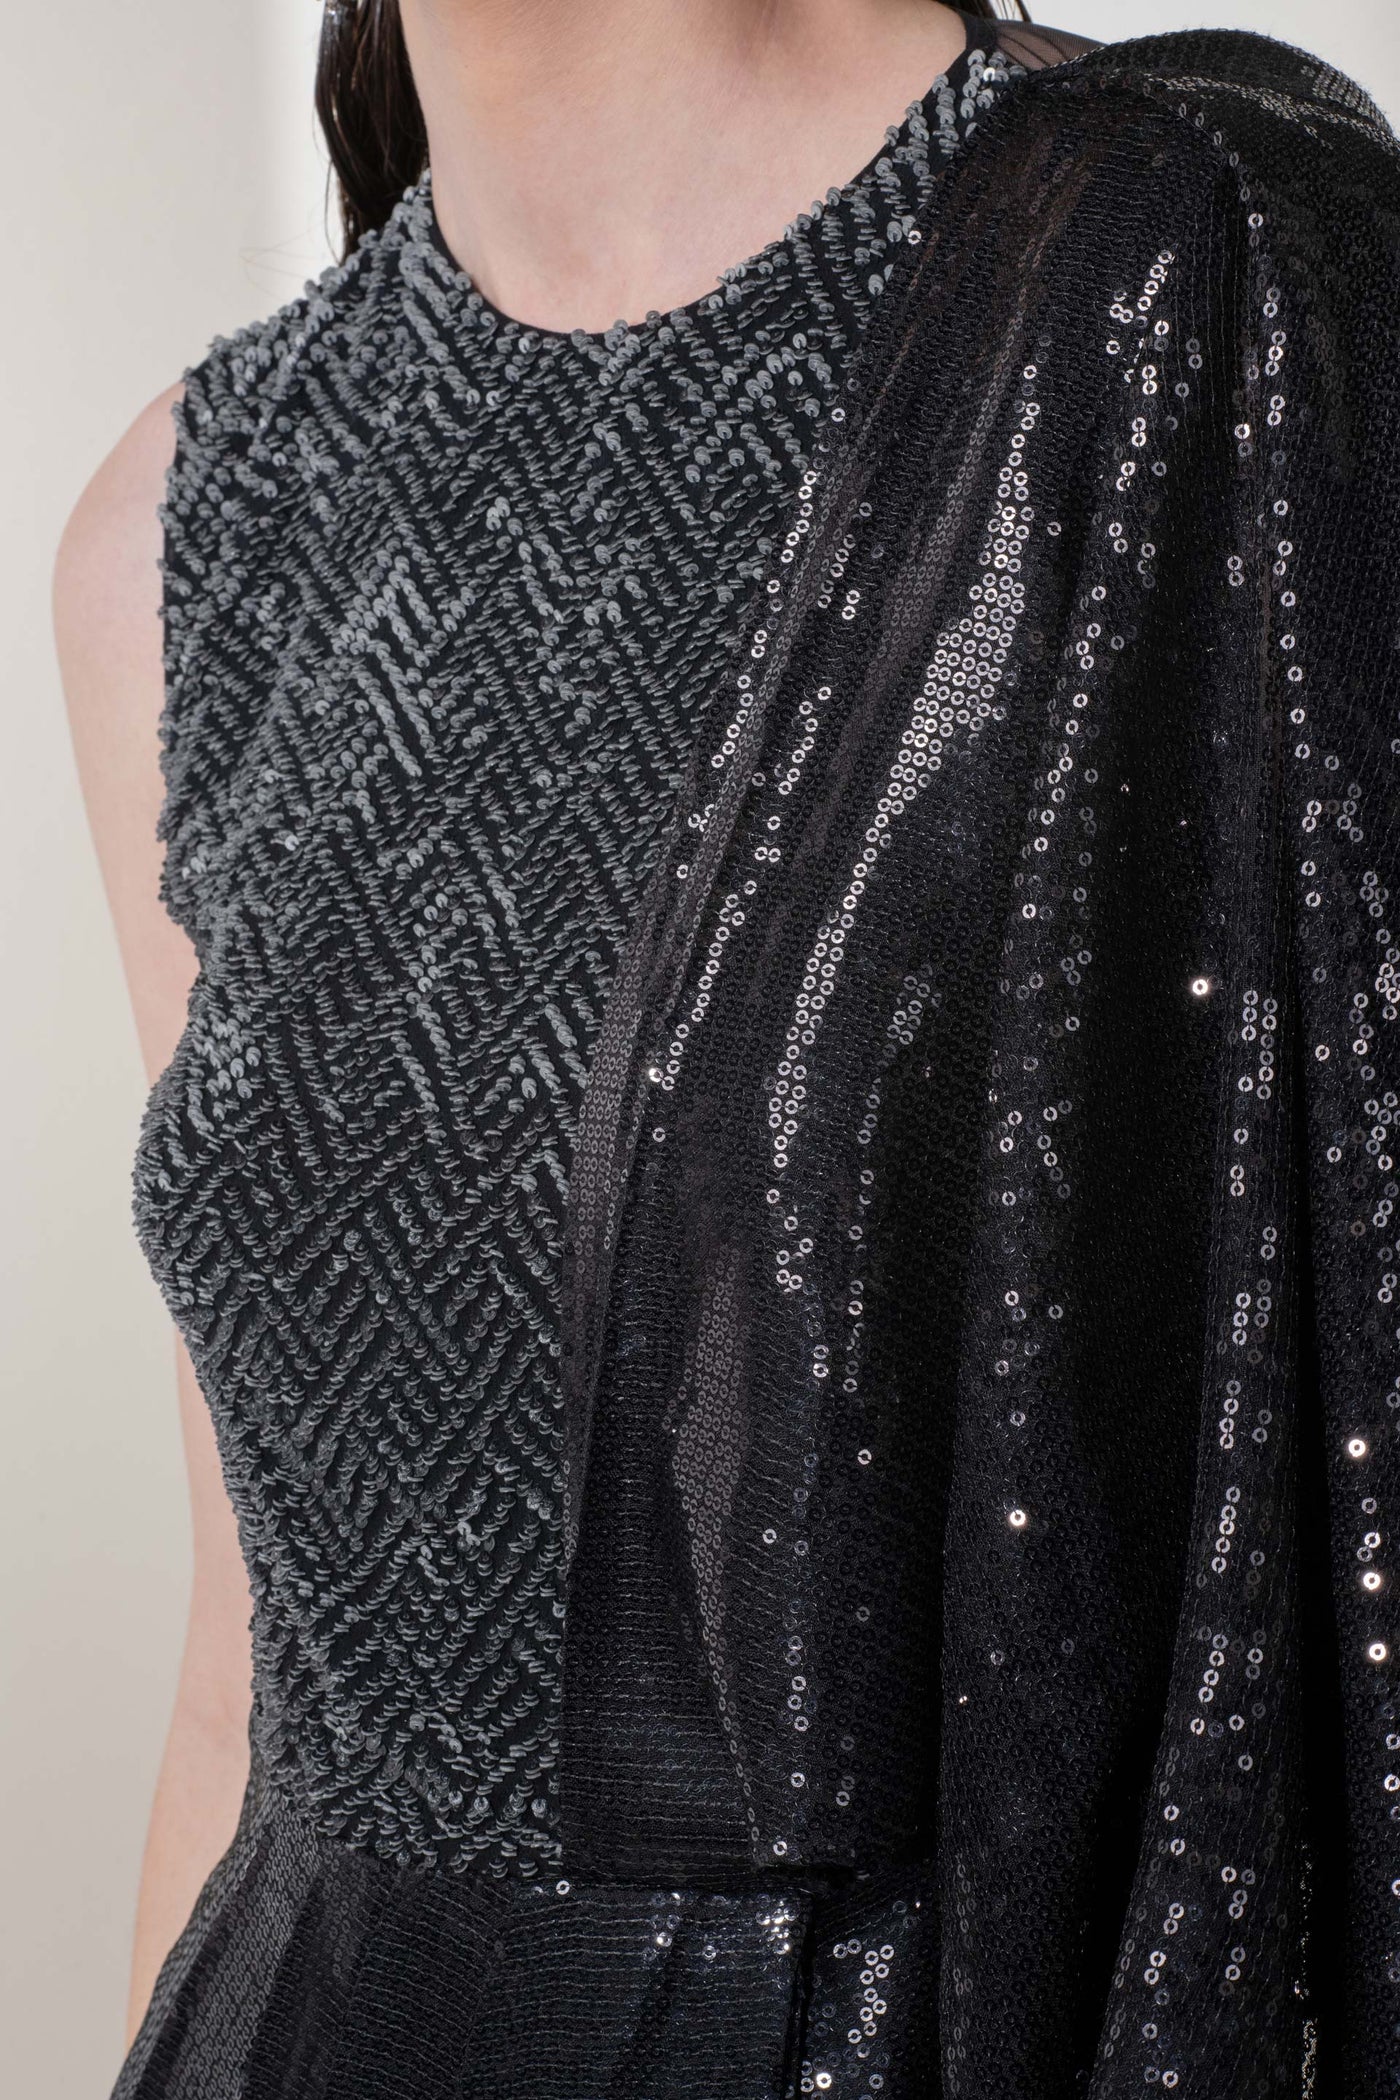 Namrata Joshipura Metallic Weave Drape Set black fusion indian designer wear online shopping melange singapore